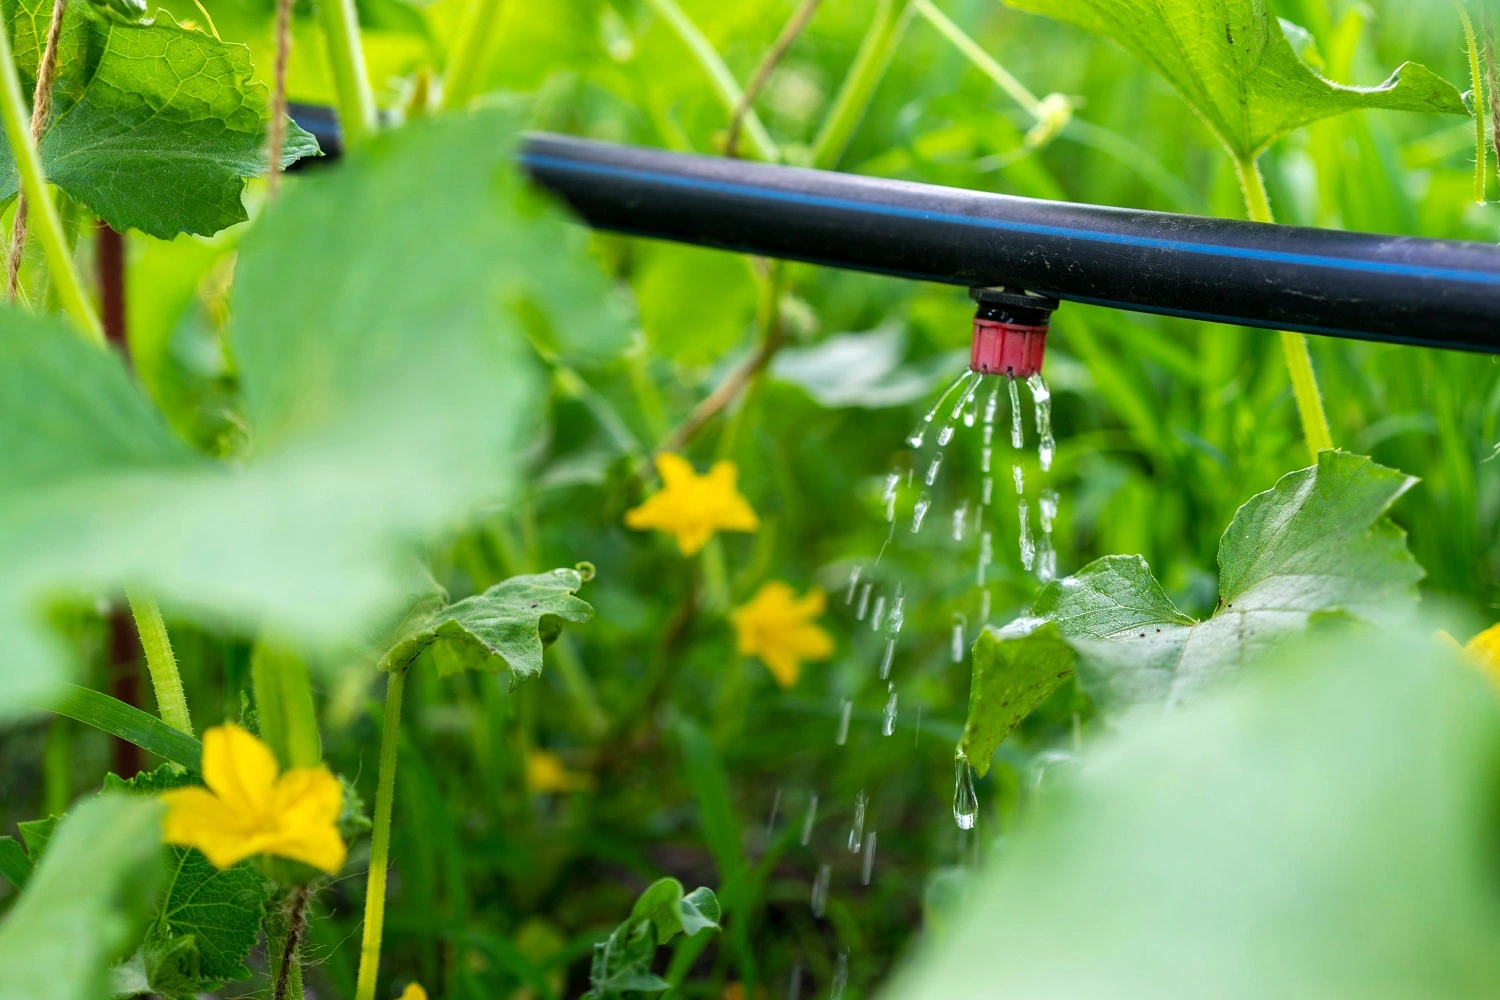 sistemi di irrigazione giardino a goccia